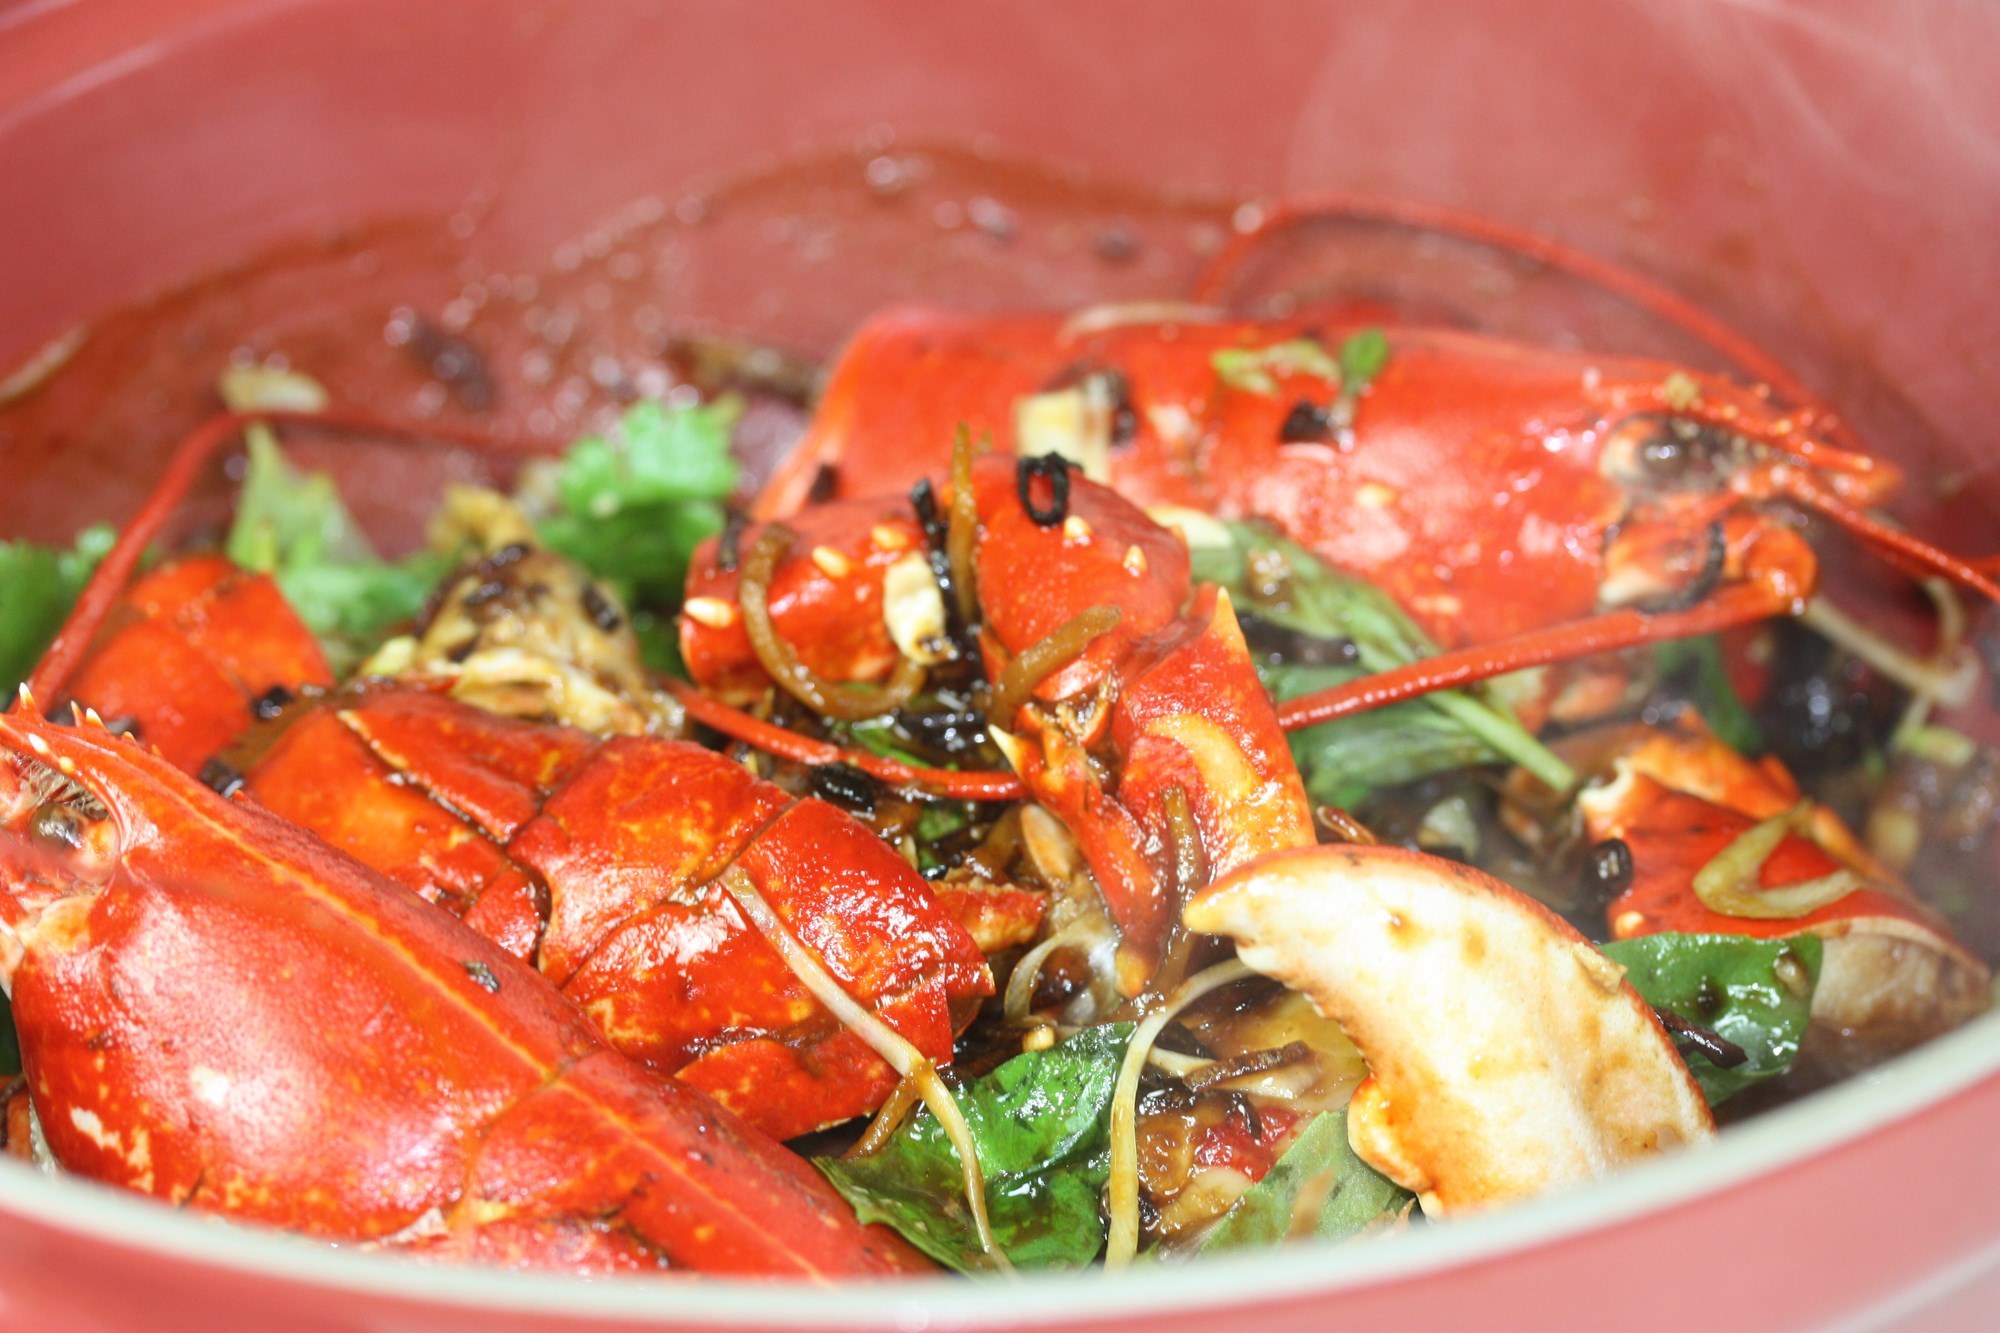 Singaporean chili lobster af nykogt hummer fra Jegindø